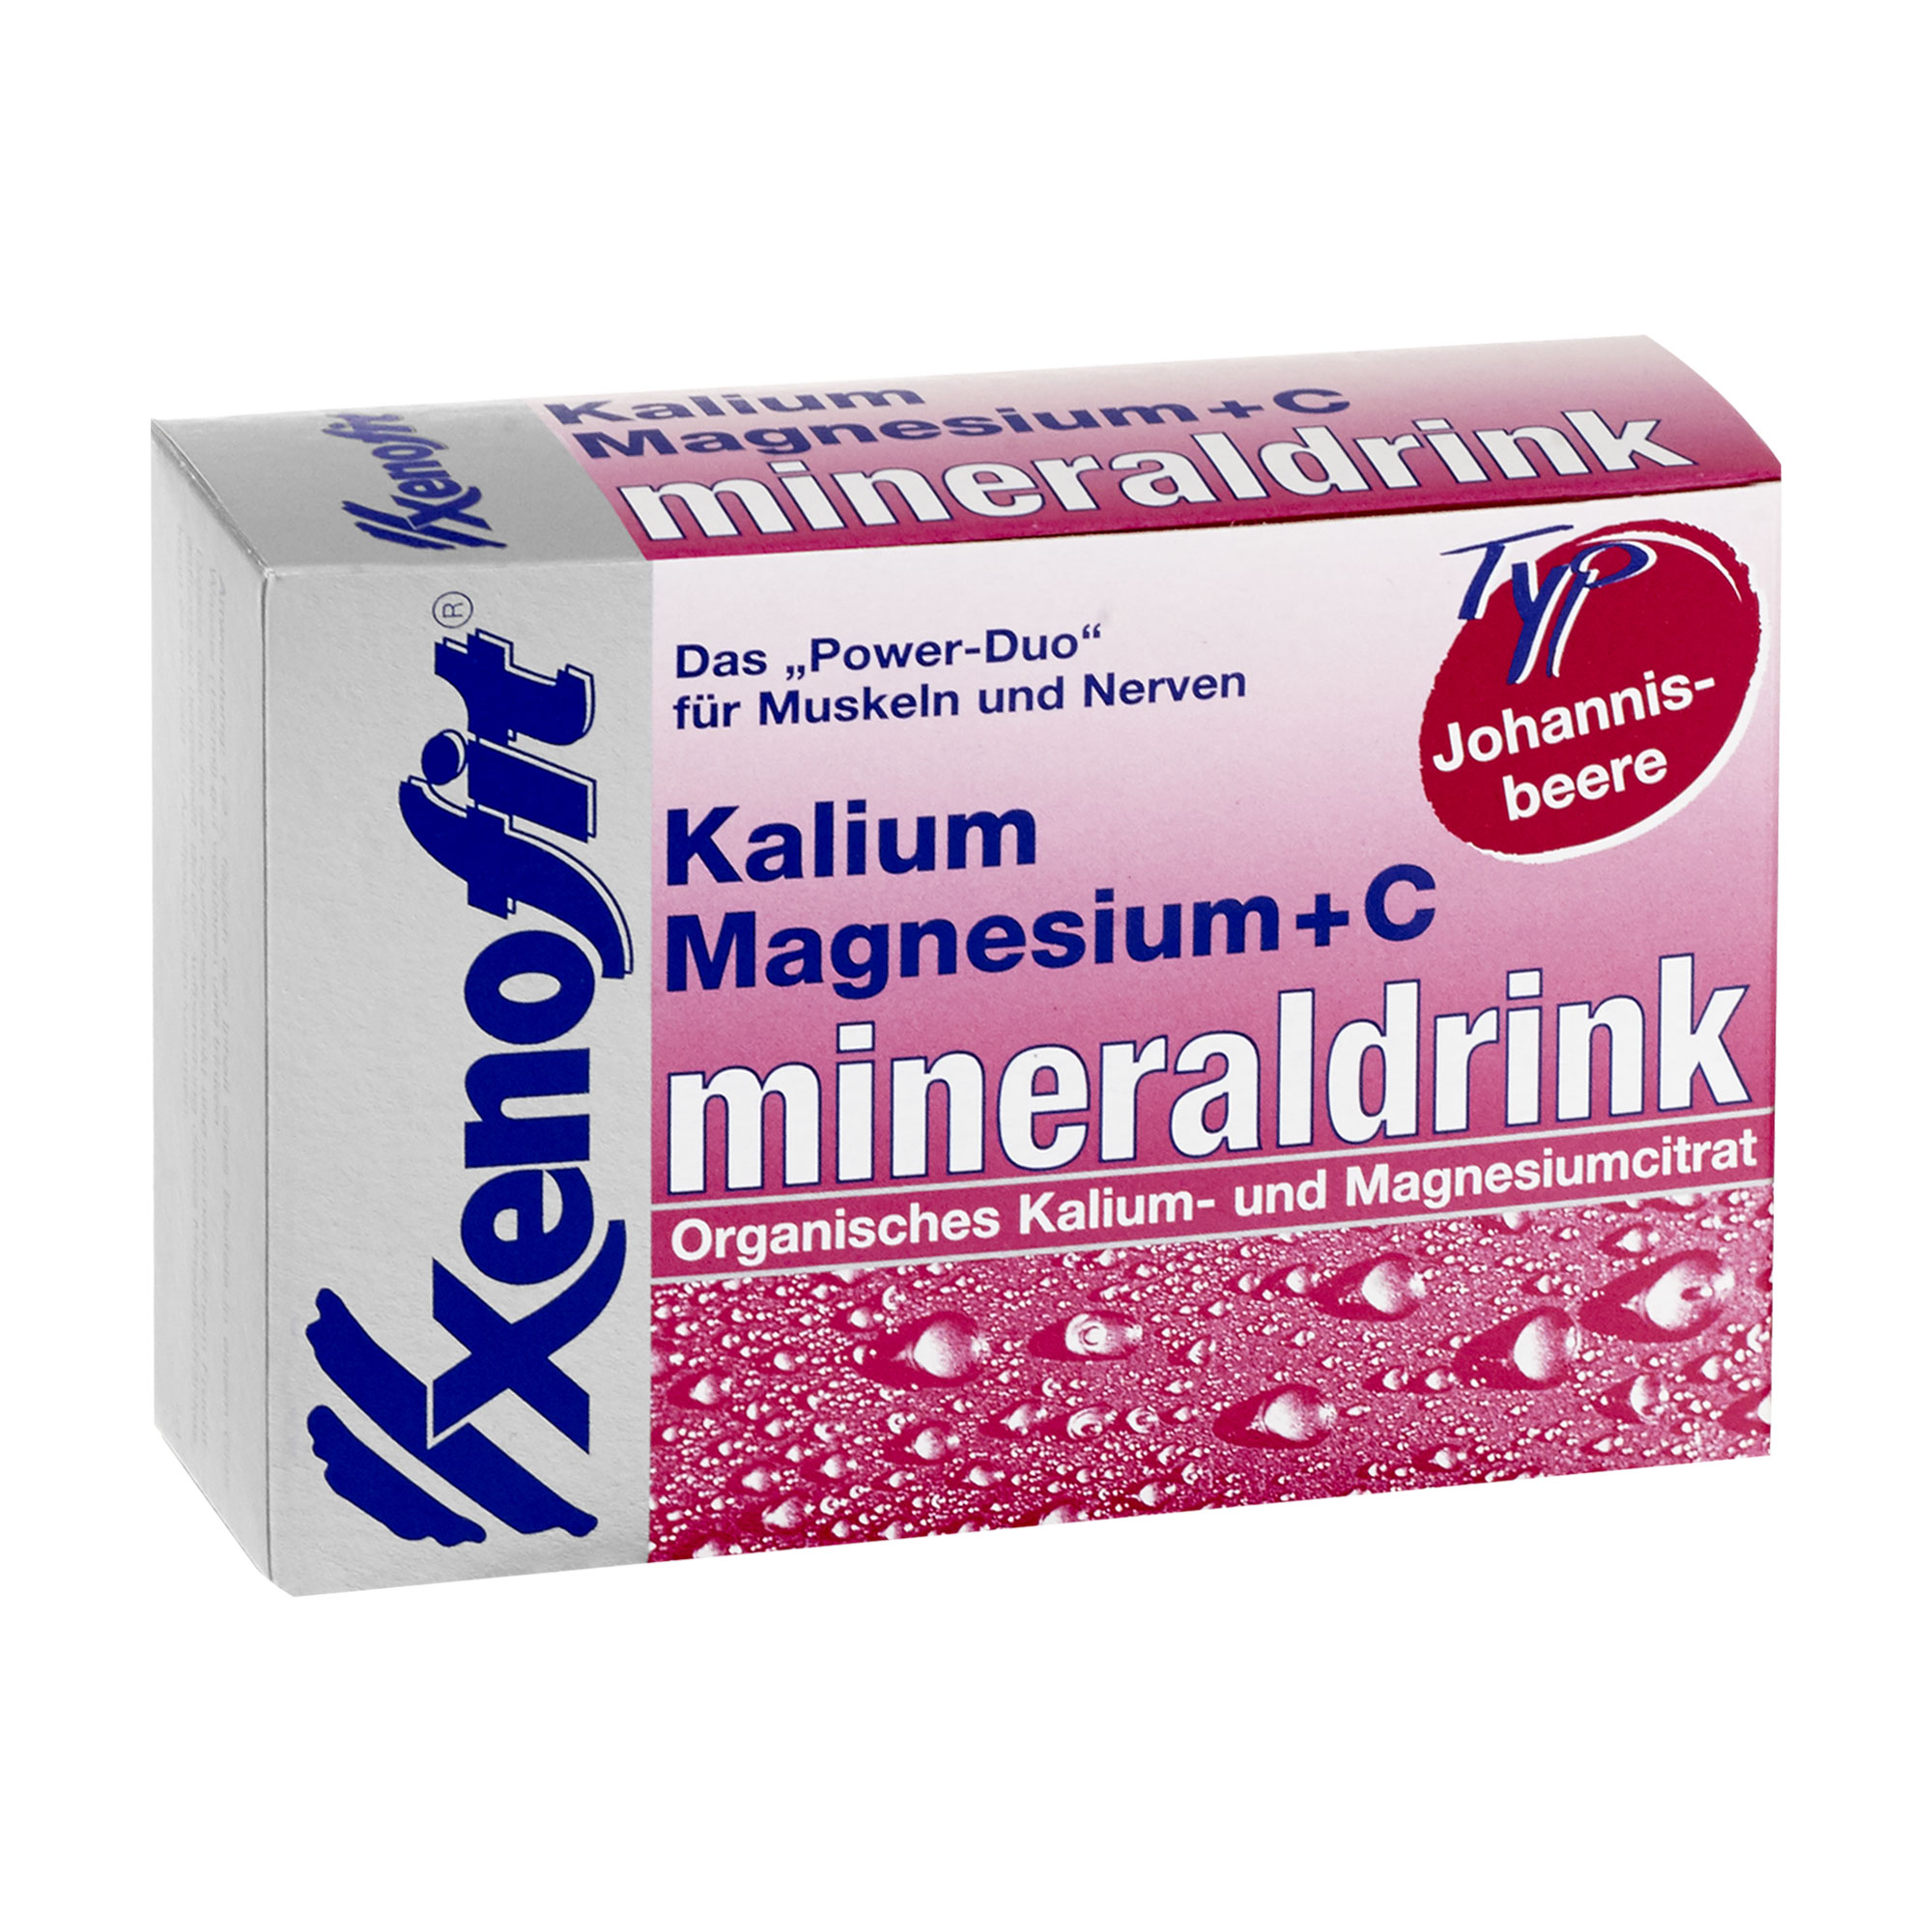 Nahrungsergänzungsmittel mit Kalium, Magnesium und Vitamin C. Mit Johannisbeere-Geschmack.